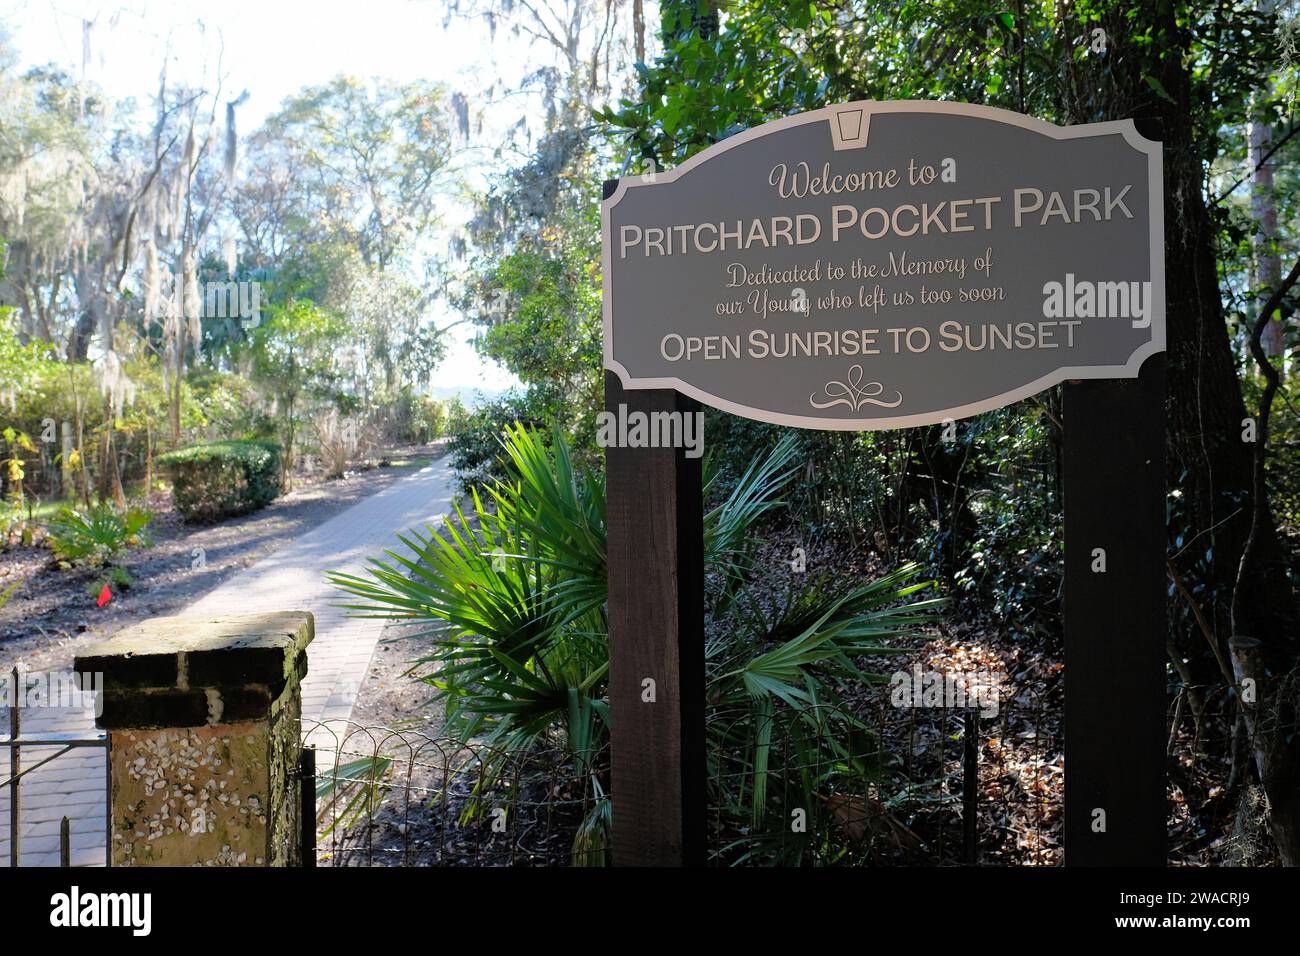 Begrüßungsschild am Eingang zum Pritchard Pocket Park in Bluffton, South Carolina; dem Gedenken an die jungen Toten gewidmet; Mini Park. Stockfoto